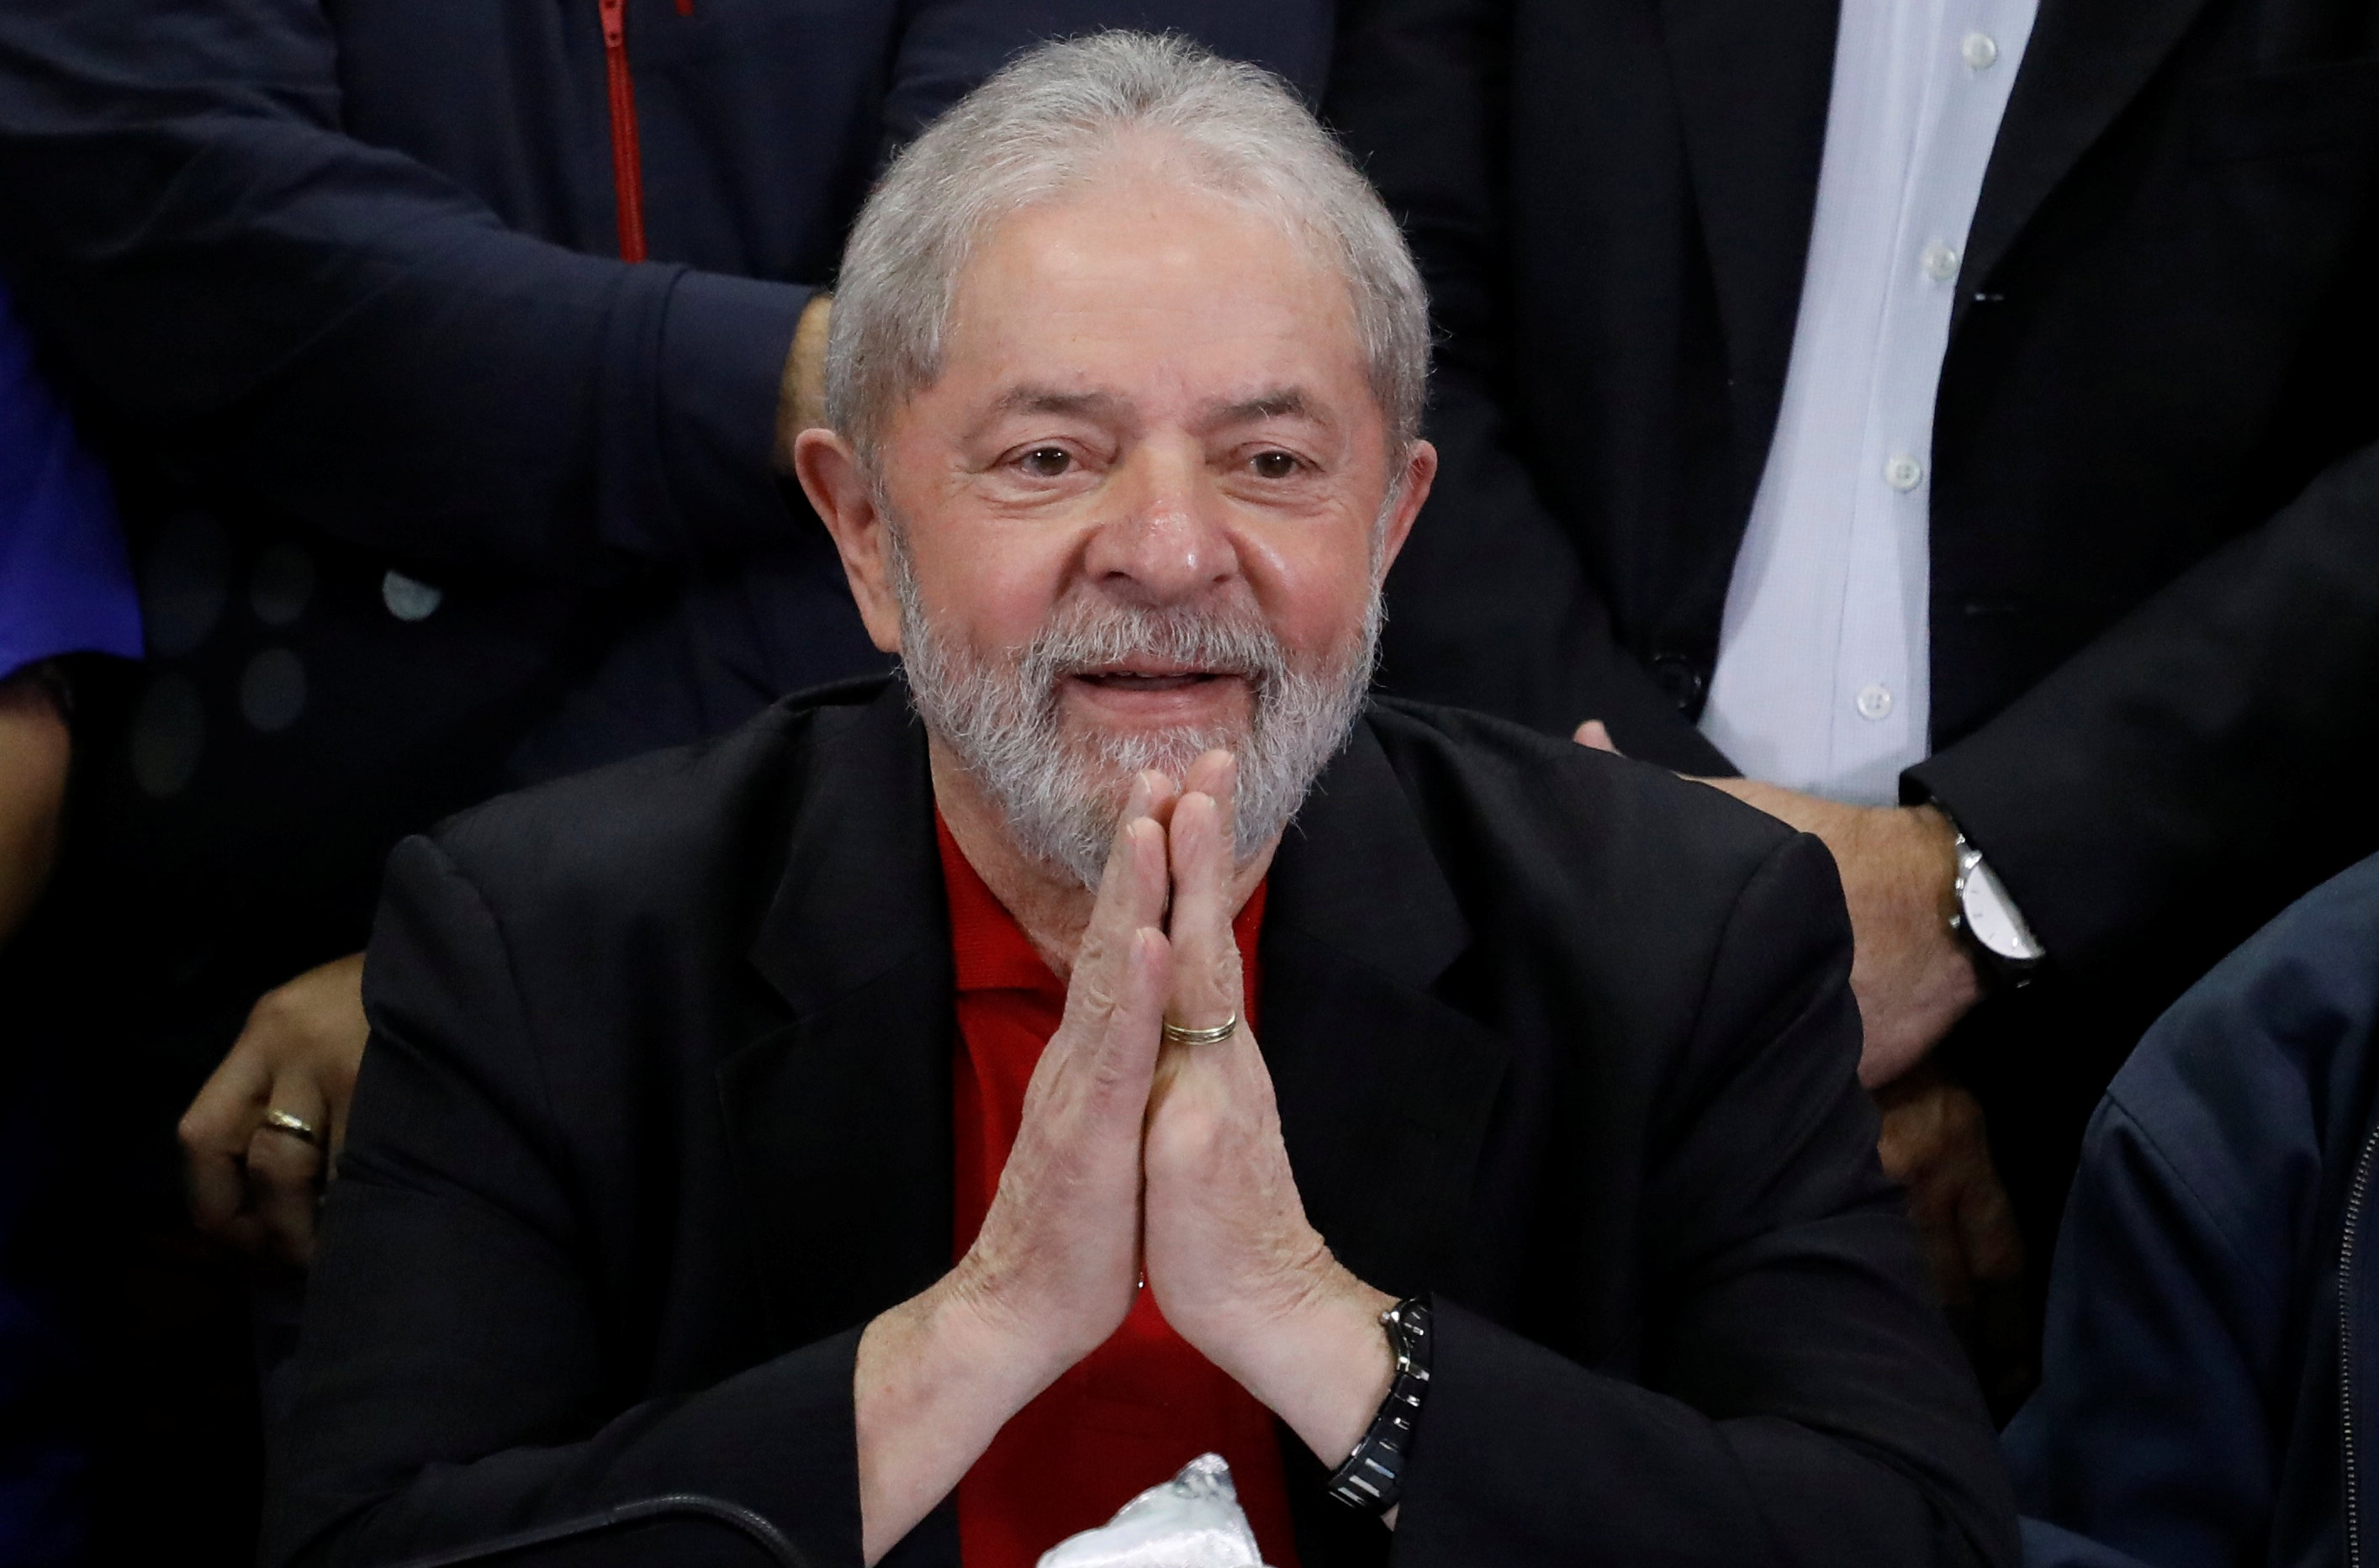 Fachin libera para o plenário do Supremo pedido de liberdade de Lula